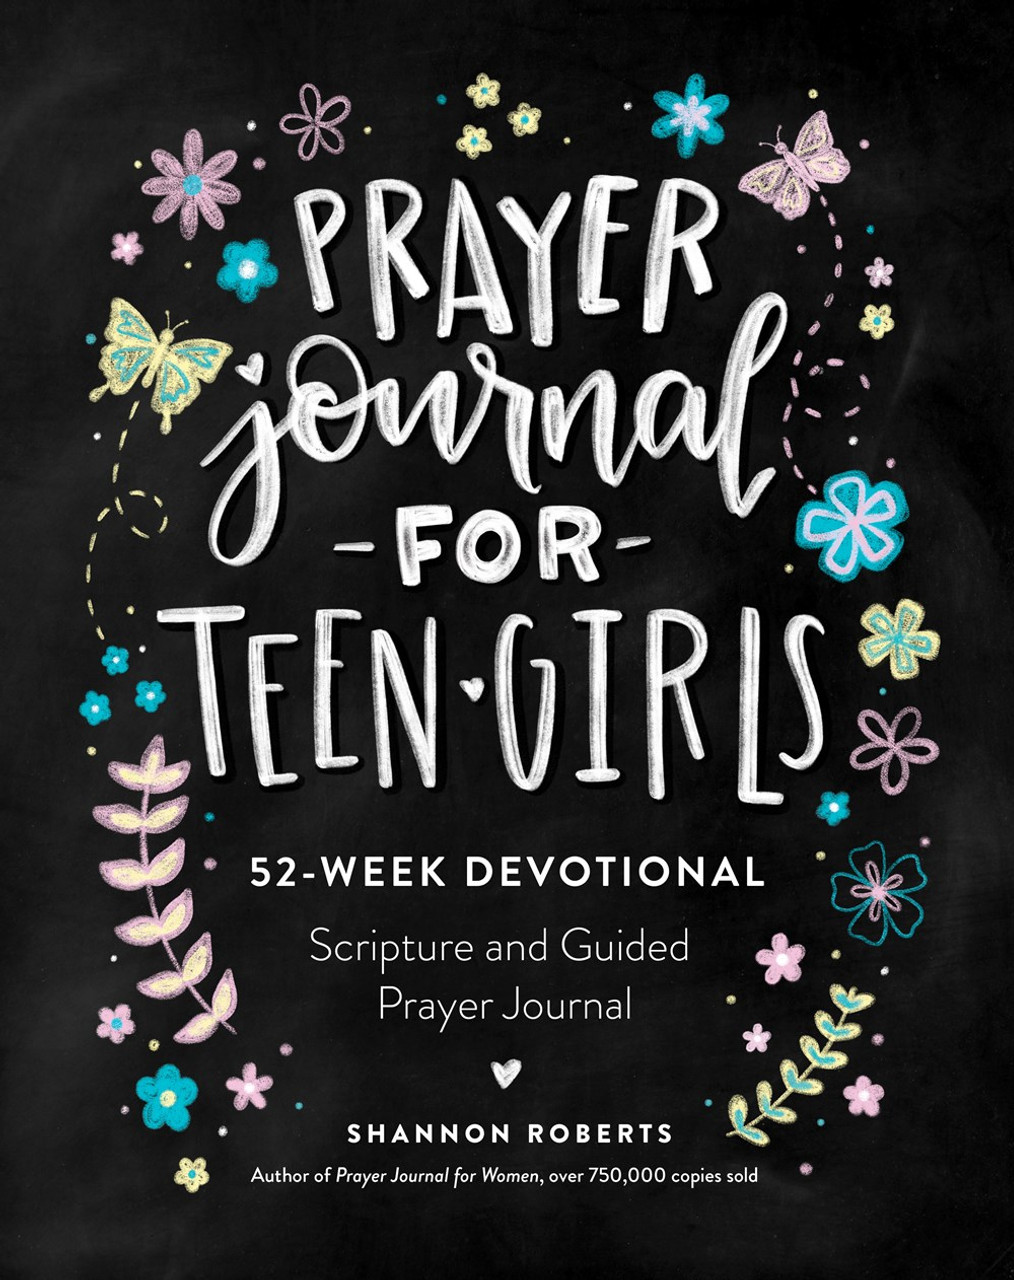 Prayer Journal for Women: 52 Week Scripture, Devotional, & Guided Prayer Journal [Book]